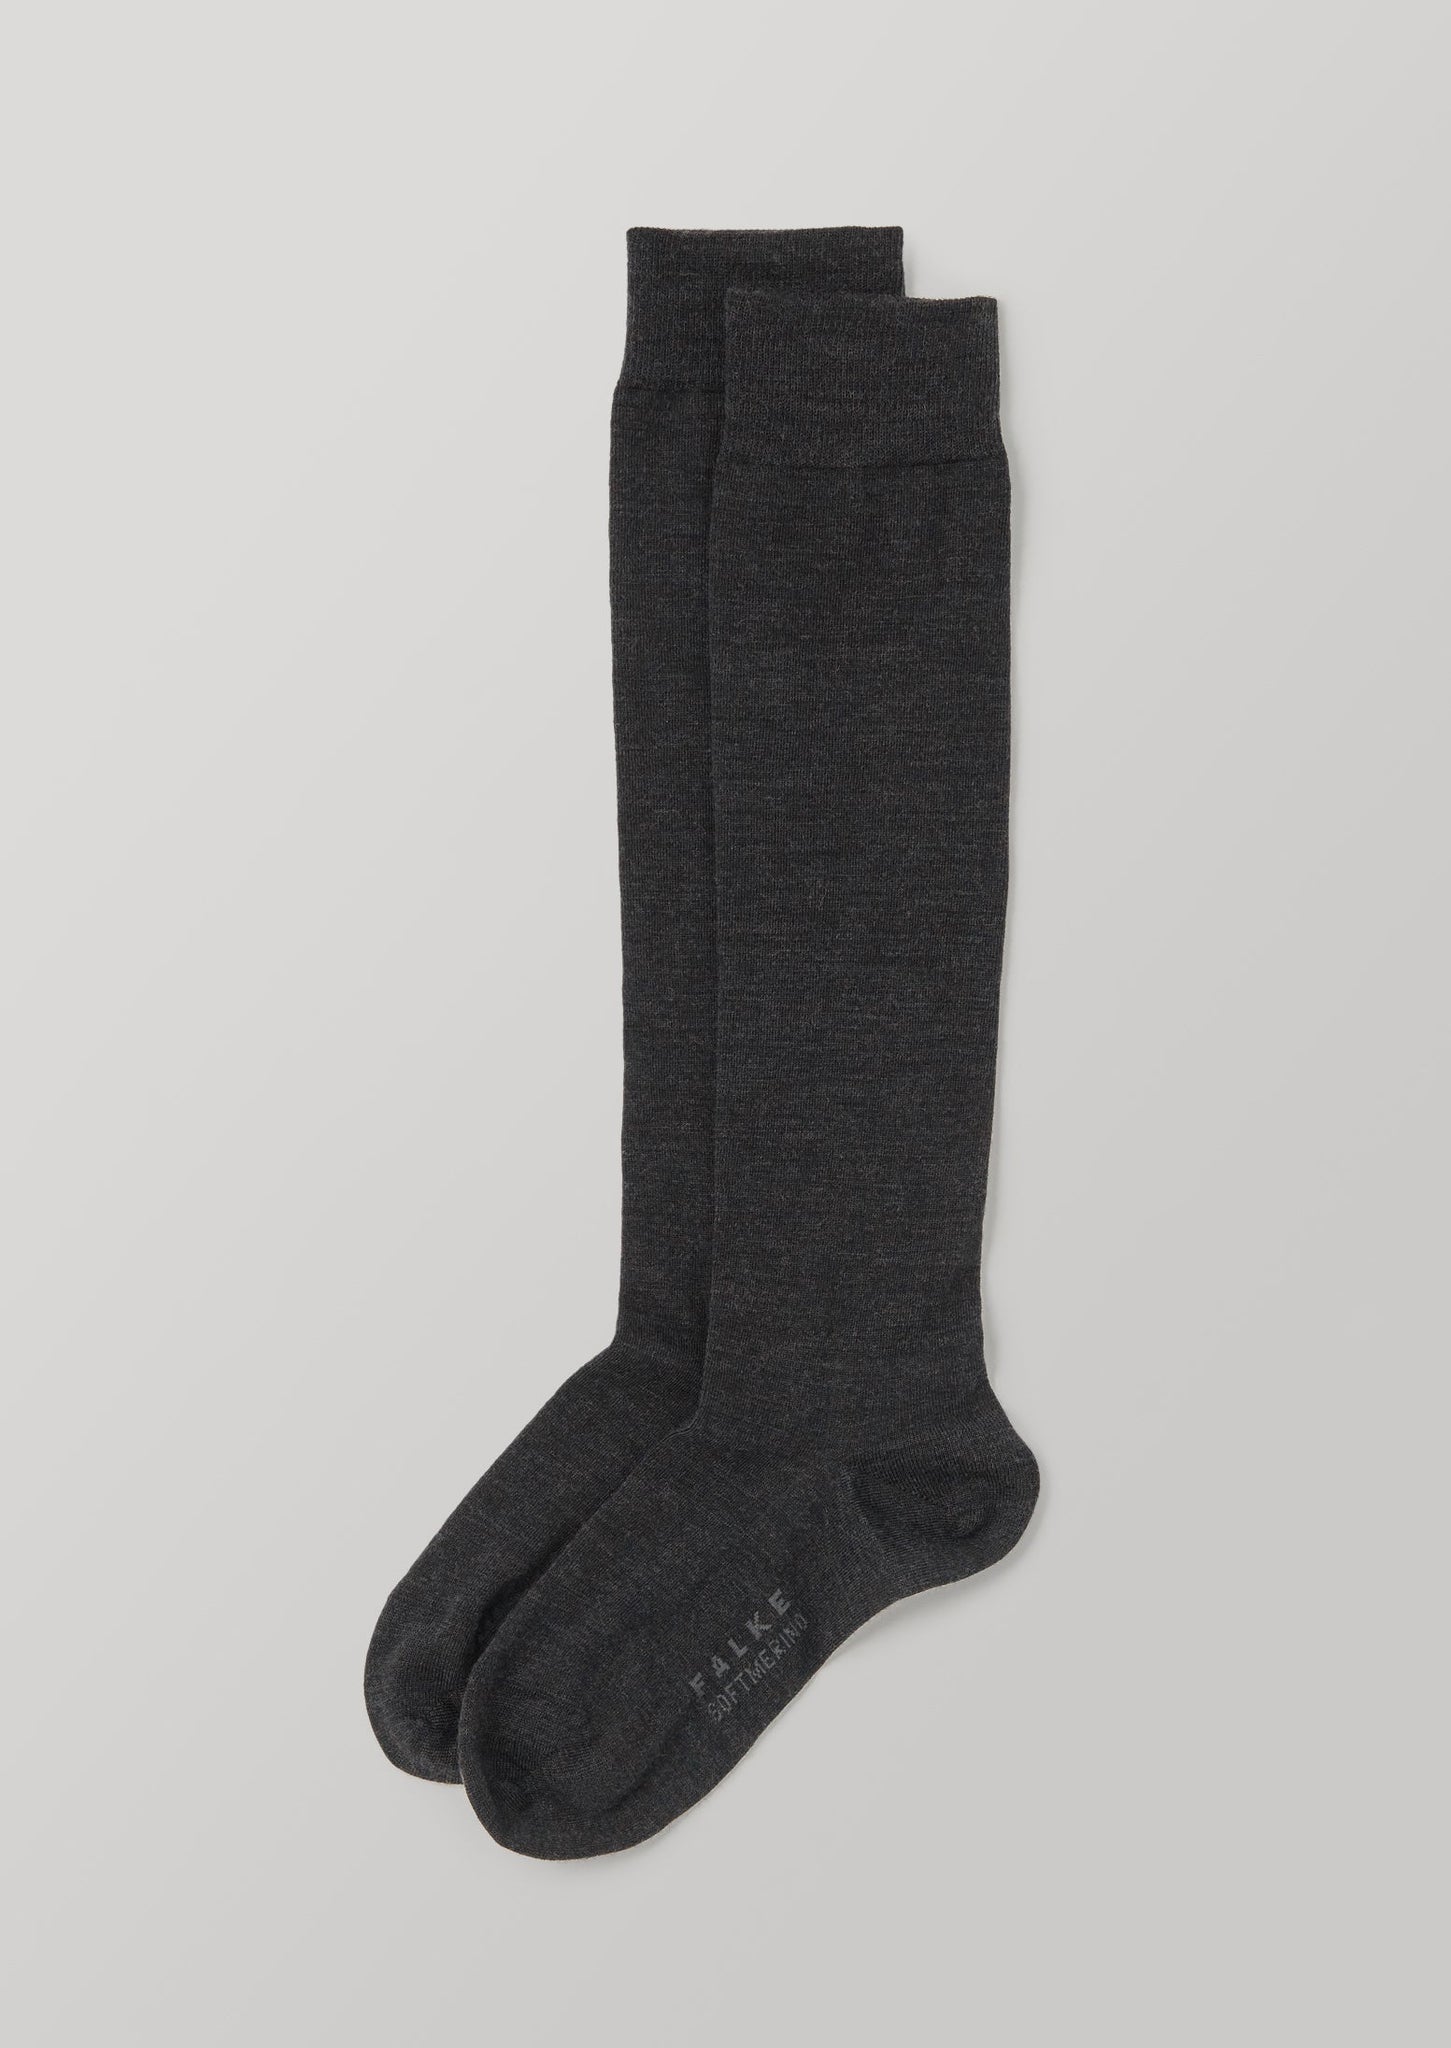 Falke Merino Knee High Socks | Anthracite